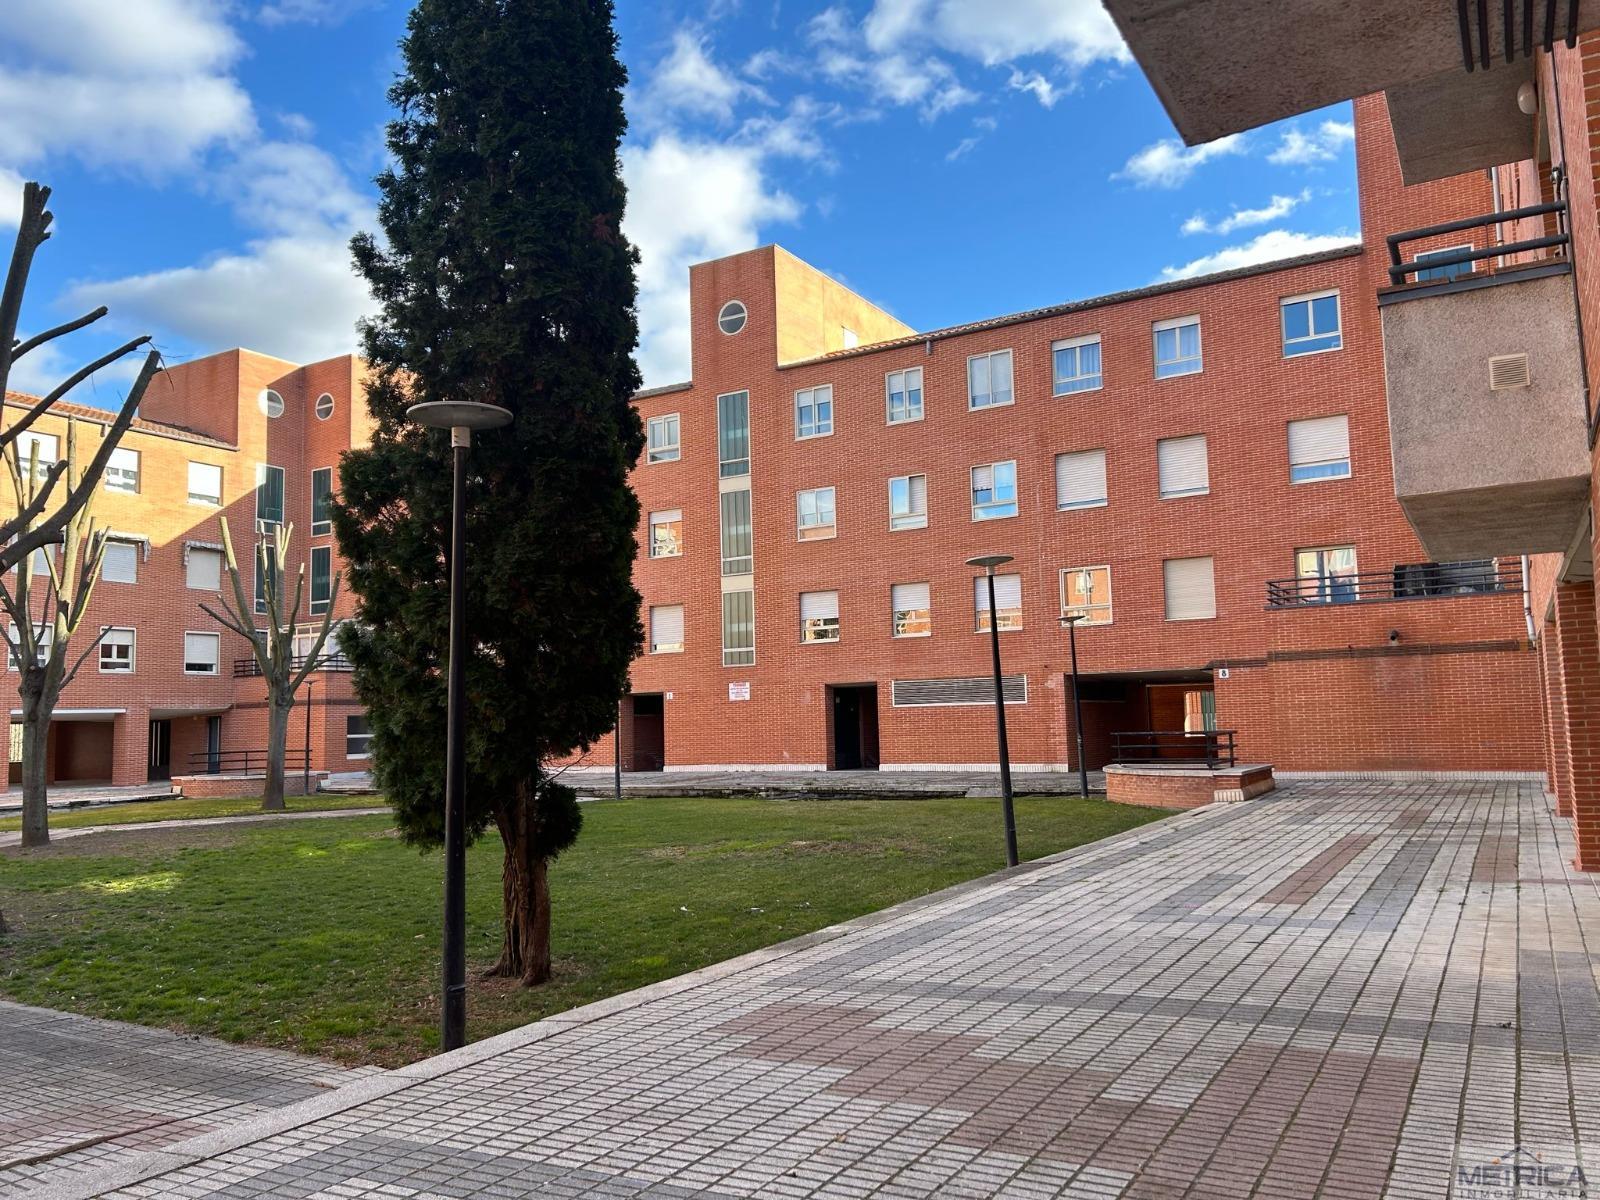 Alquiler de apartamento en Salamanca